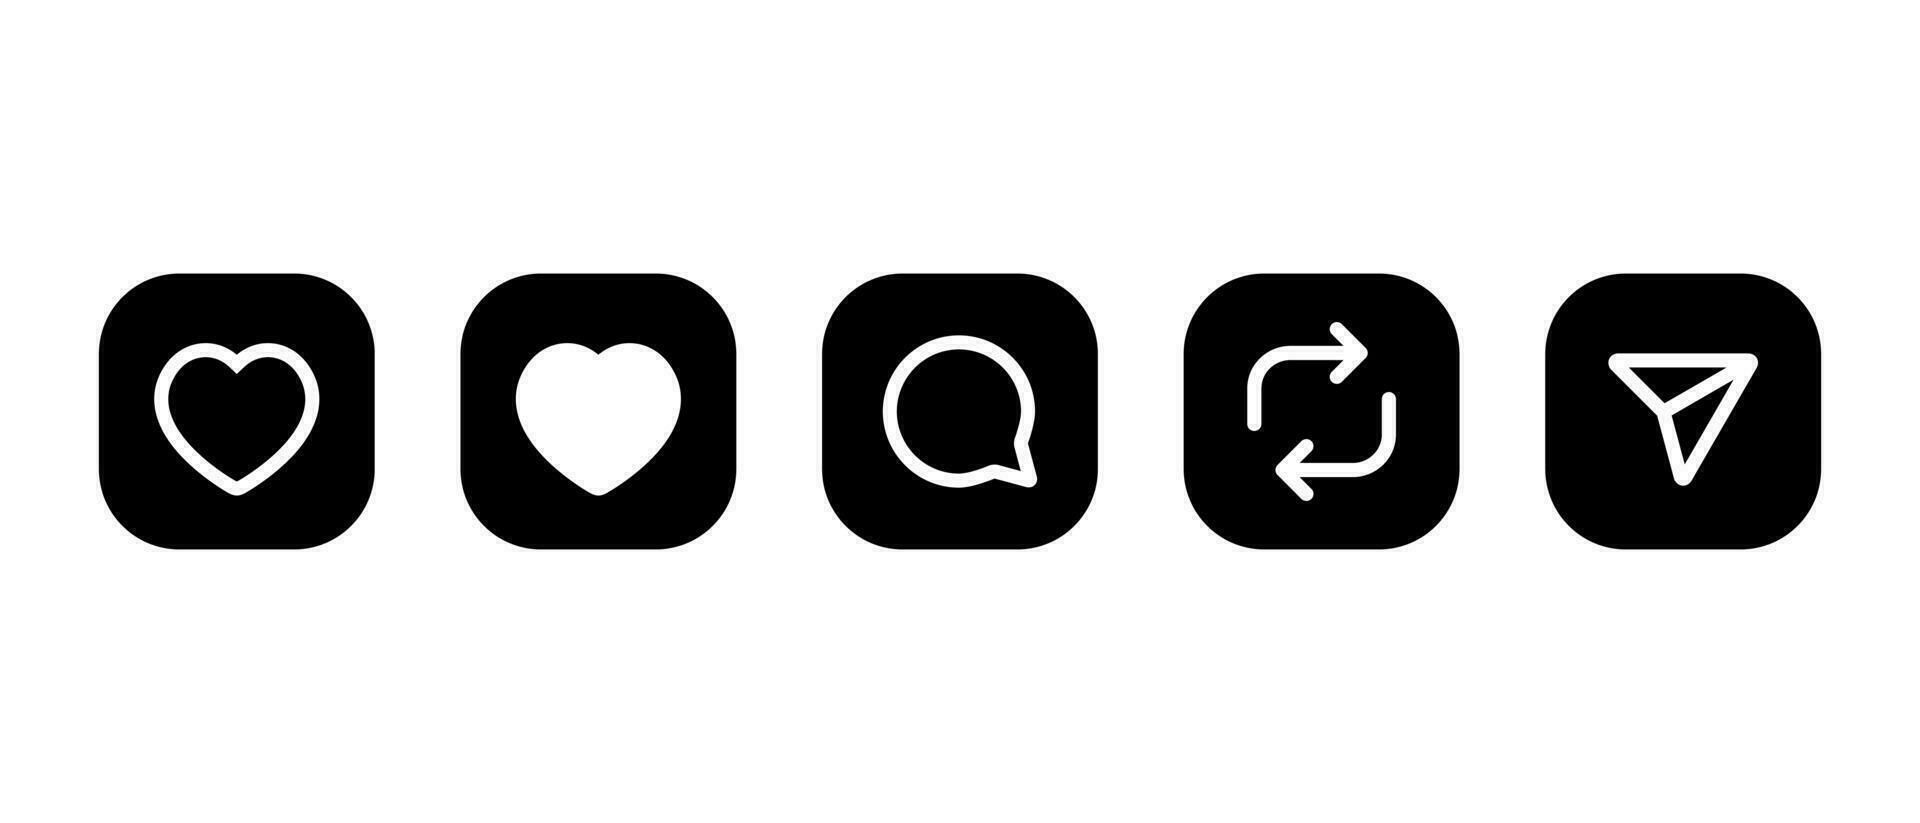 como, comentario, volver a publicar, y compartir icono vector en cuadrado antecedentes. social medios de comunicación elementos